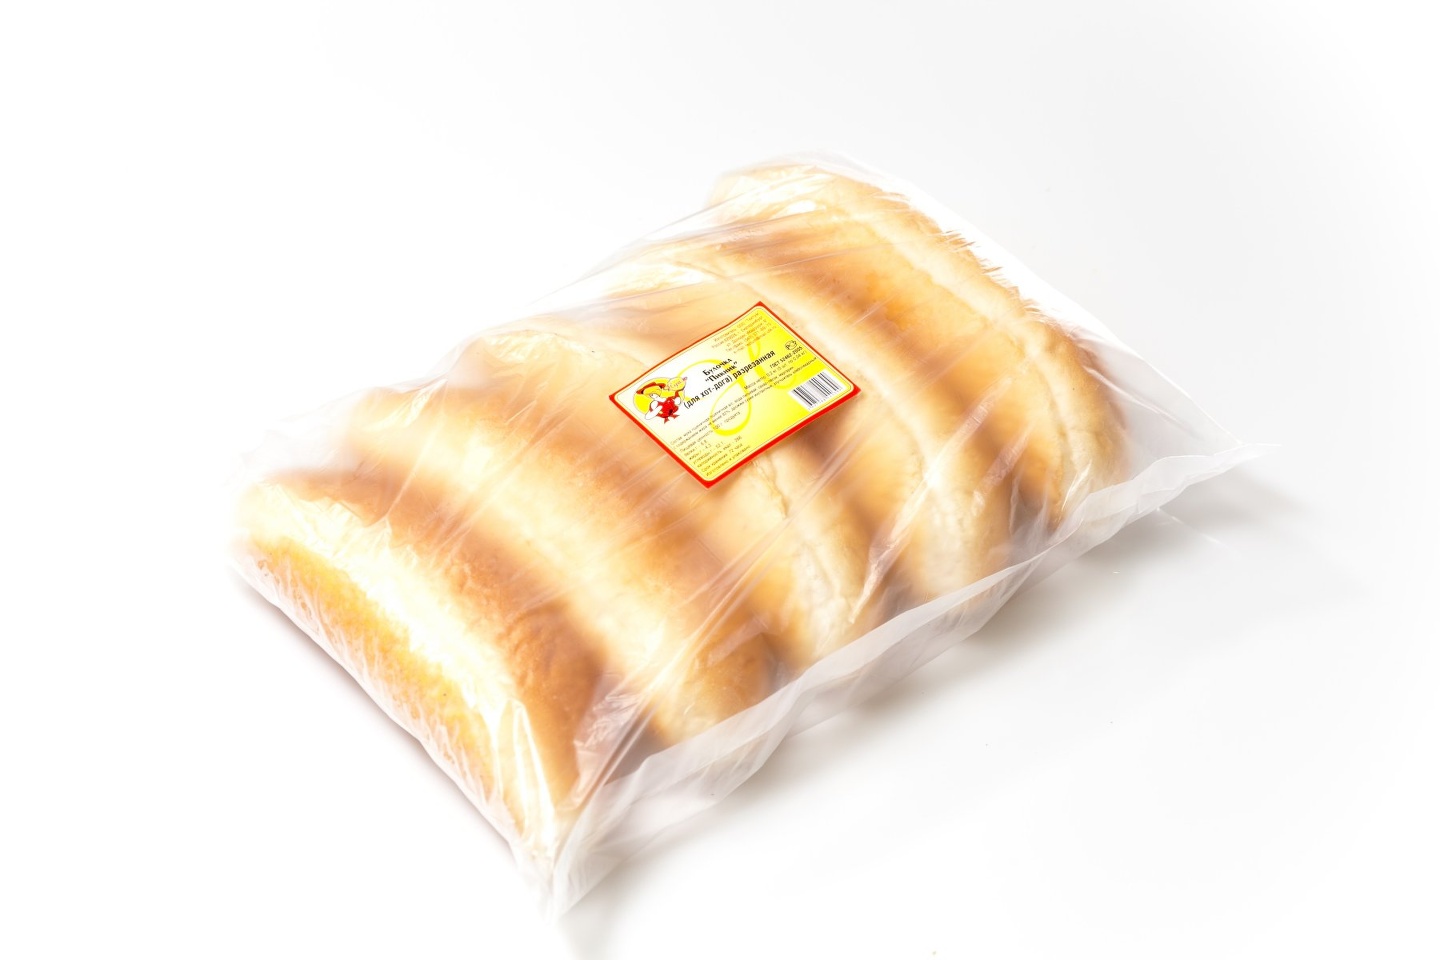 Булочка в упаковке. Упаковка булочек для хотдогов. Булочки в пакете. Хлеб в упаковке.